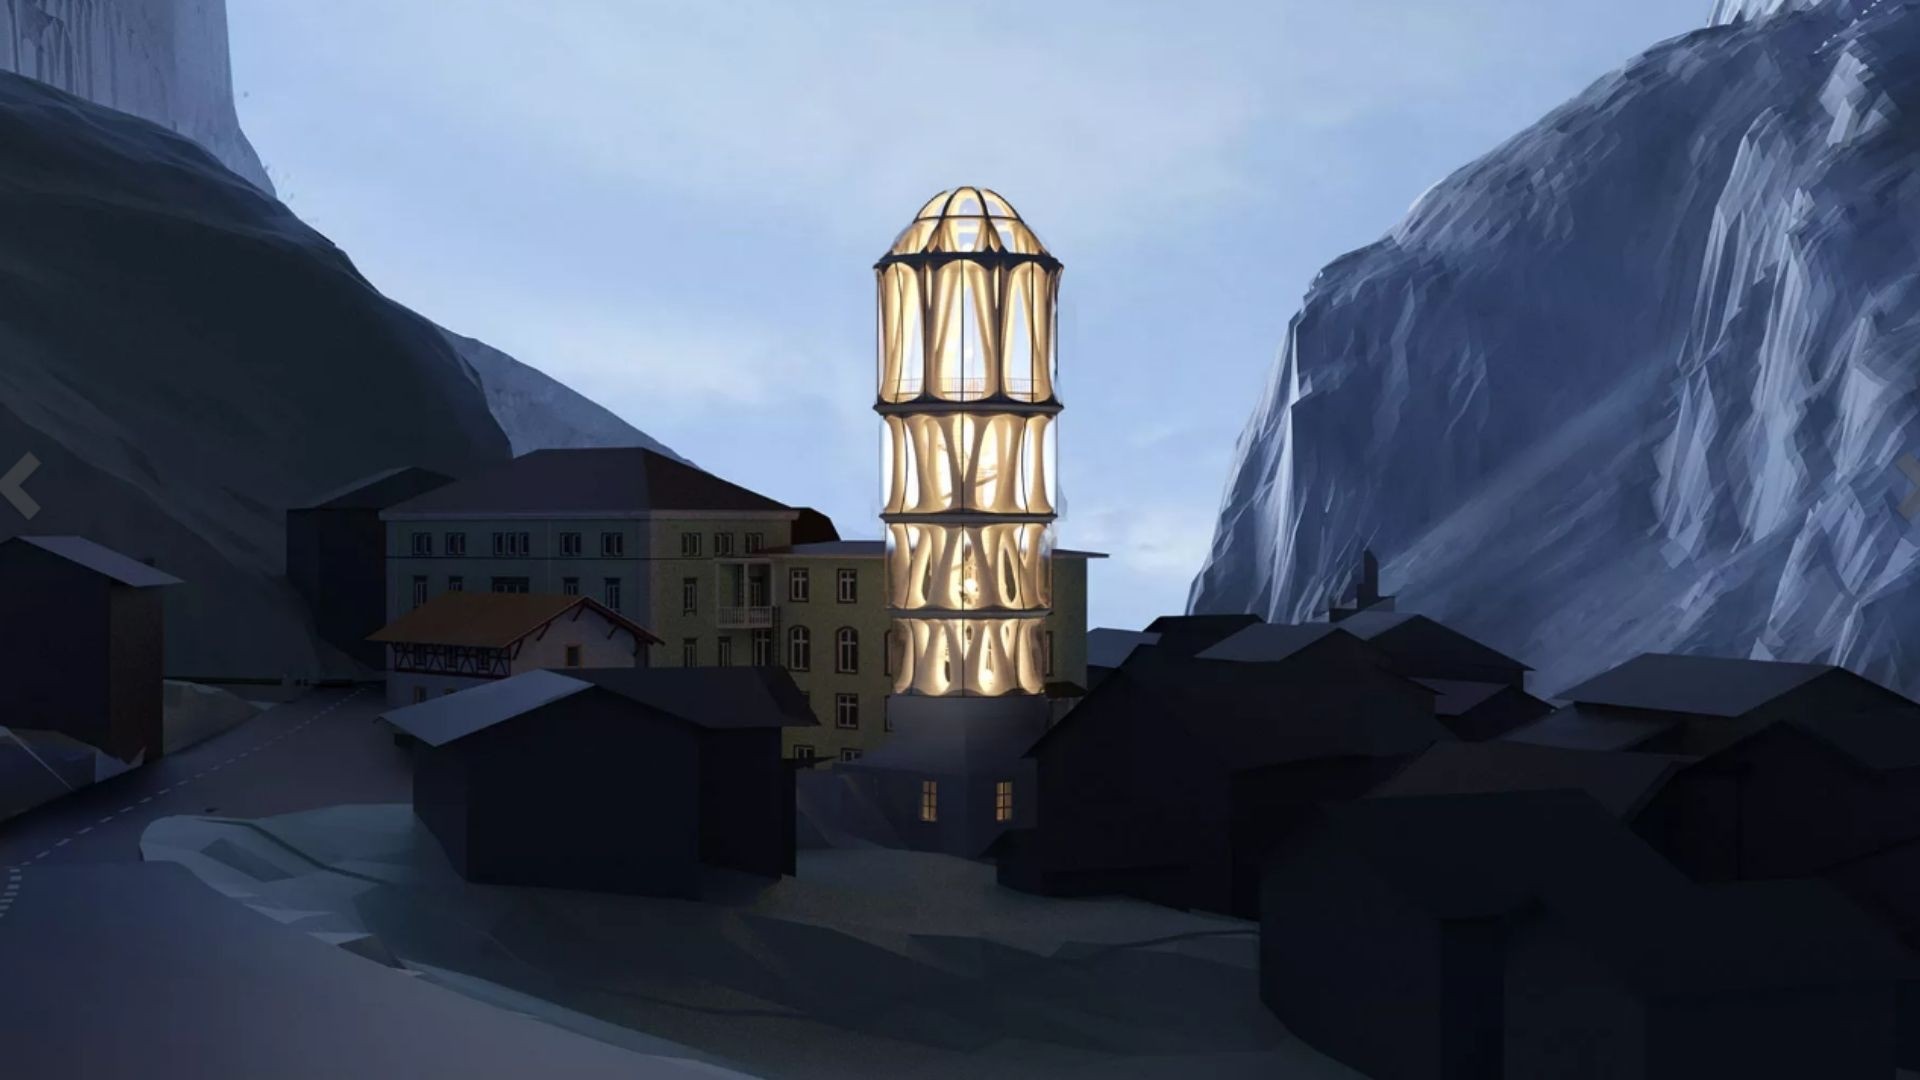 Tháp Trắng, In 3D, Dãy Alps, Kiến trúc, Công nghệ, Du lịch Thụy Sĩ